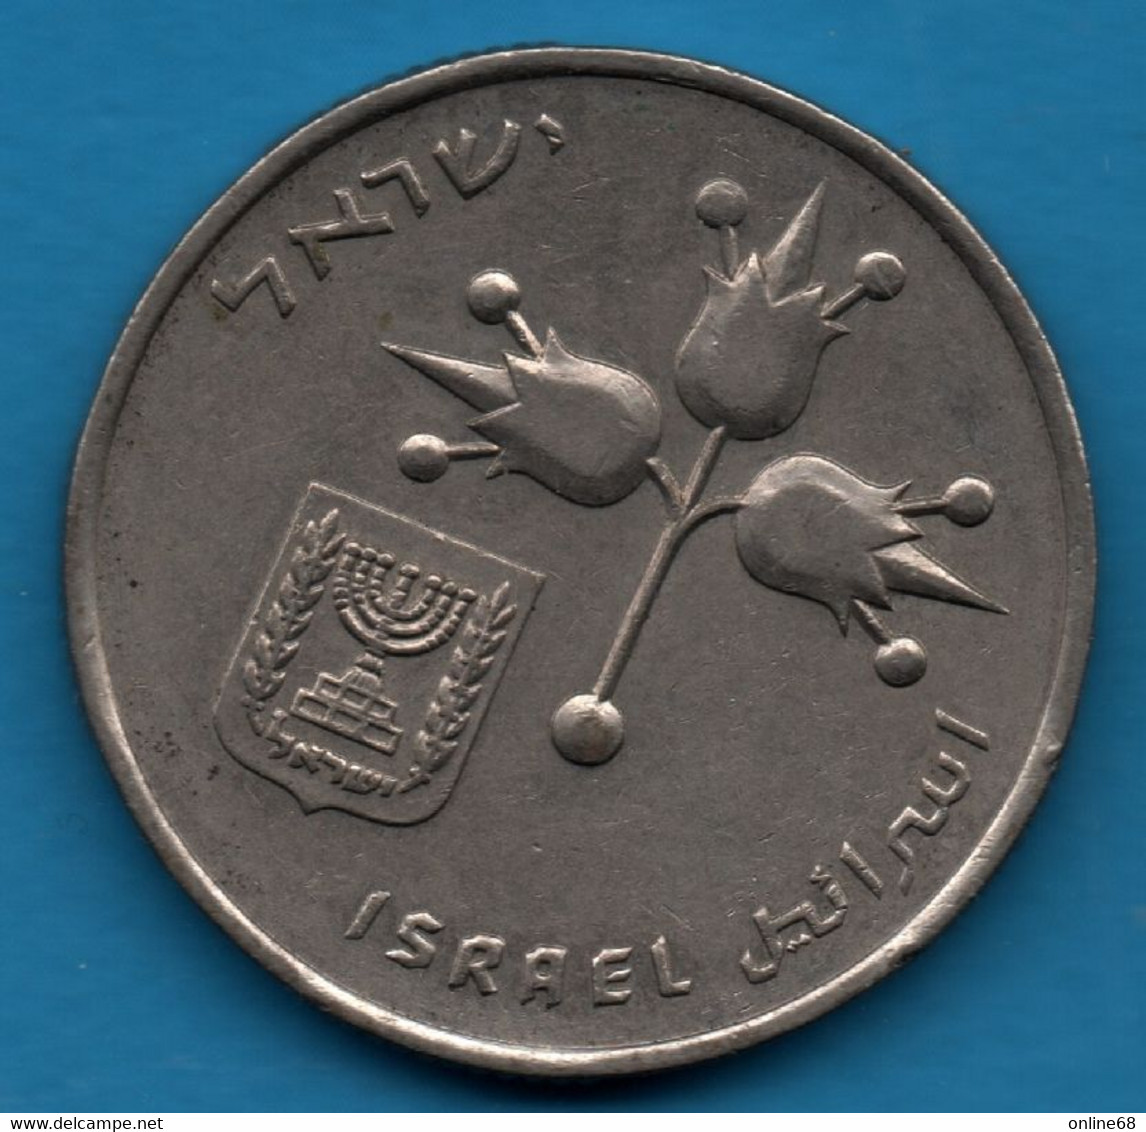 ISRAEL 1 LIRA 5727 (1967) KM# 47.1 - Israel